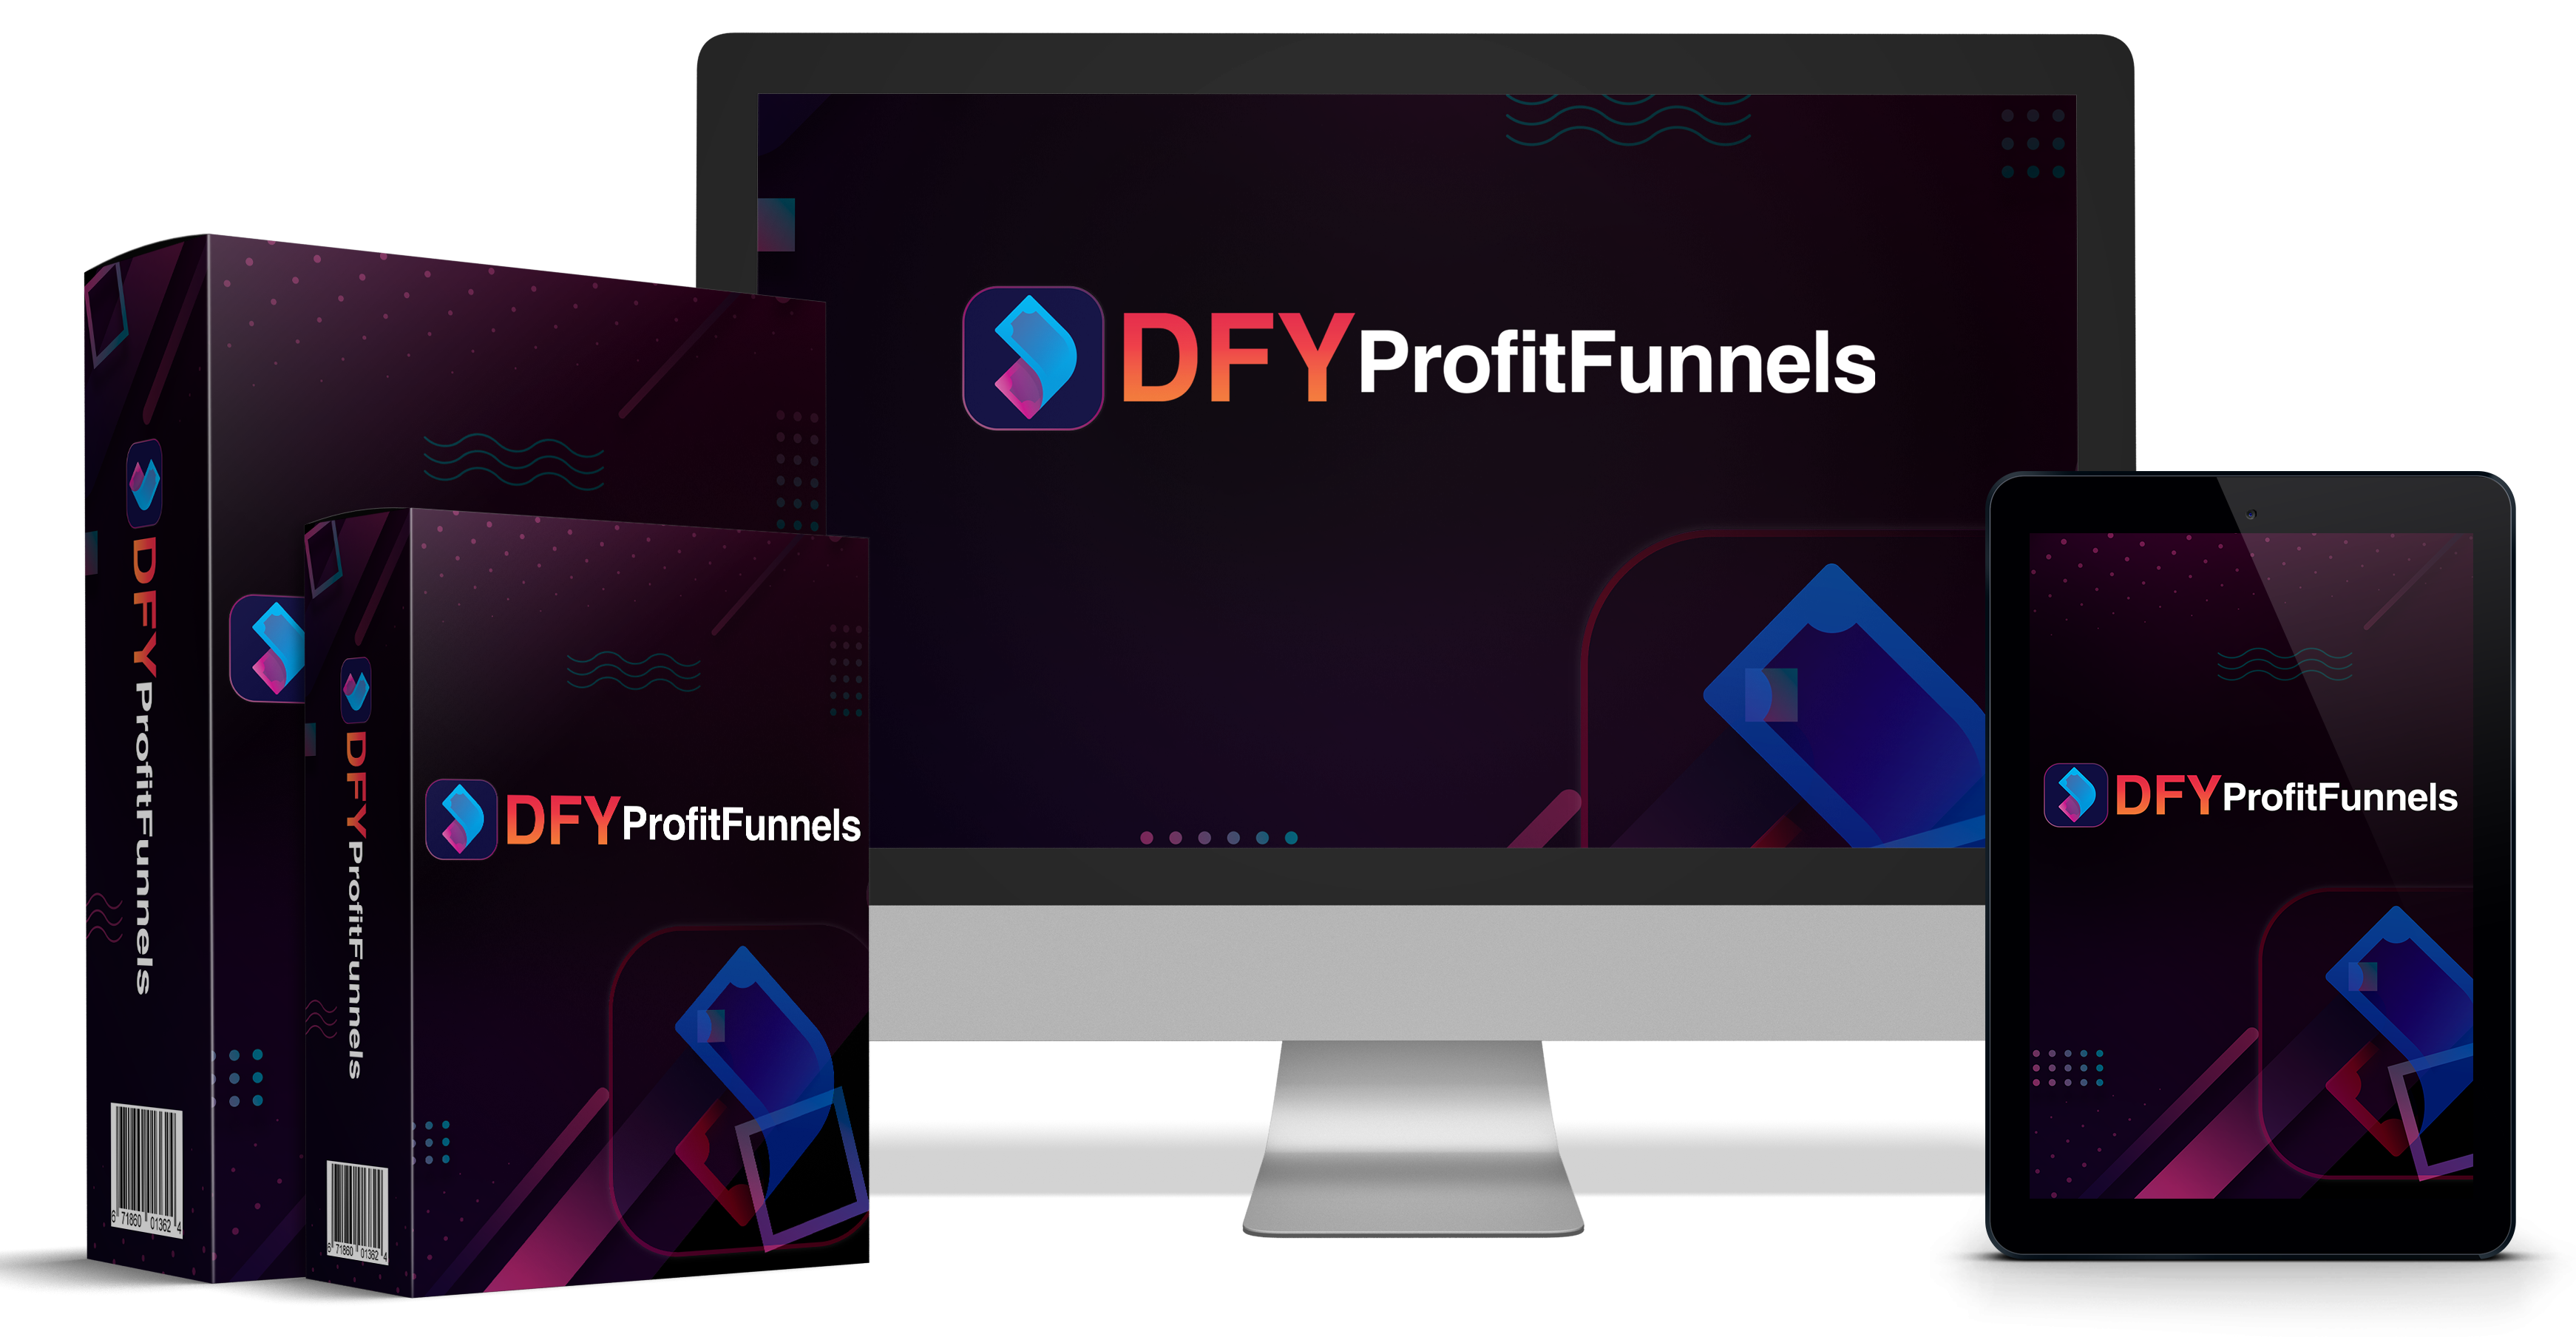 DFY Profit Funnels